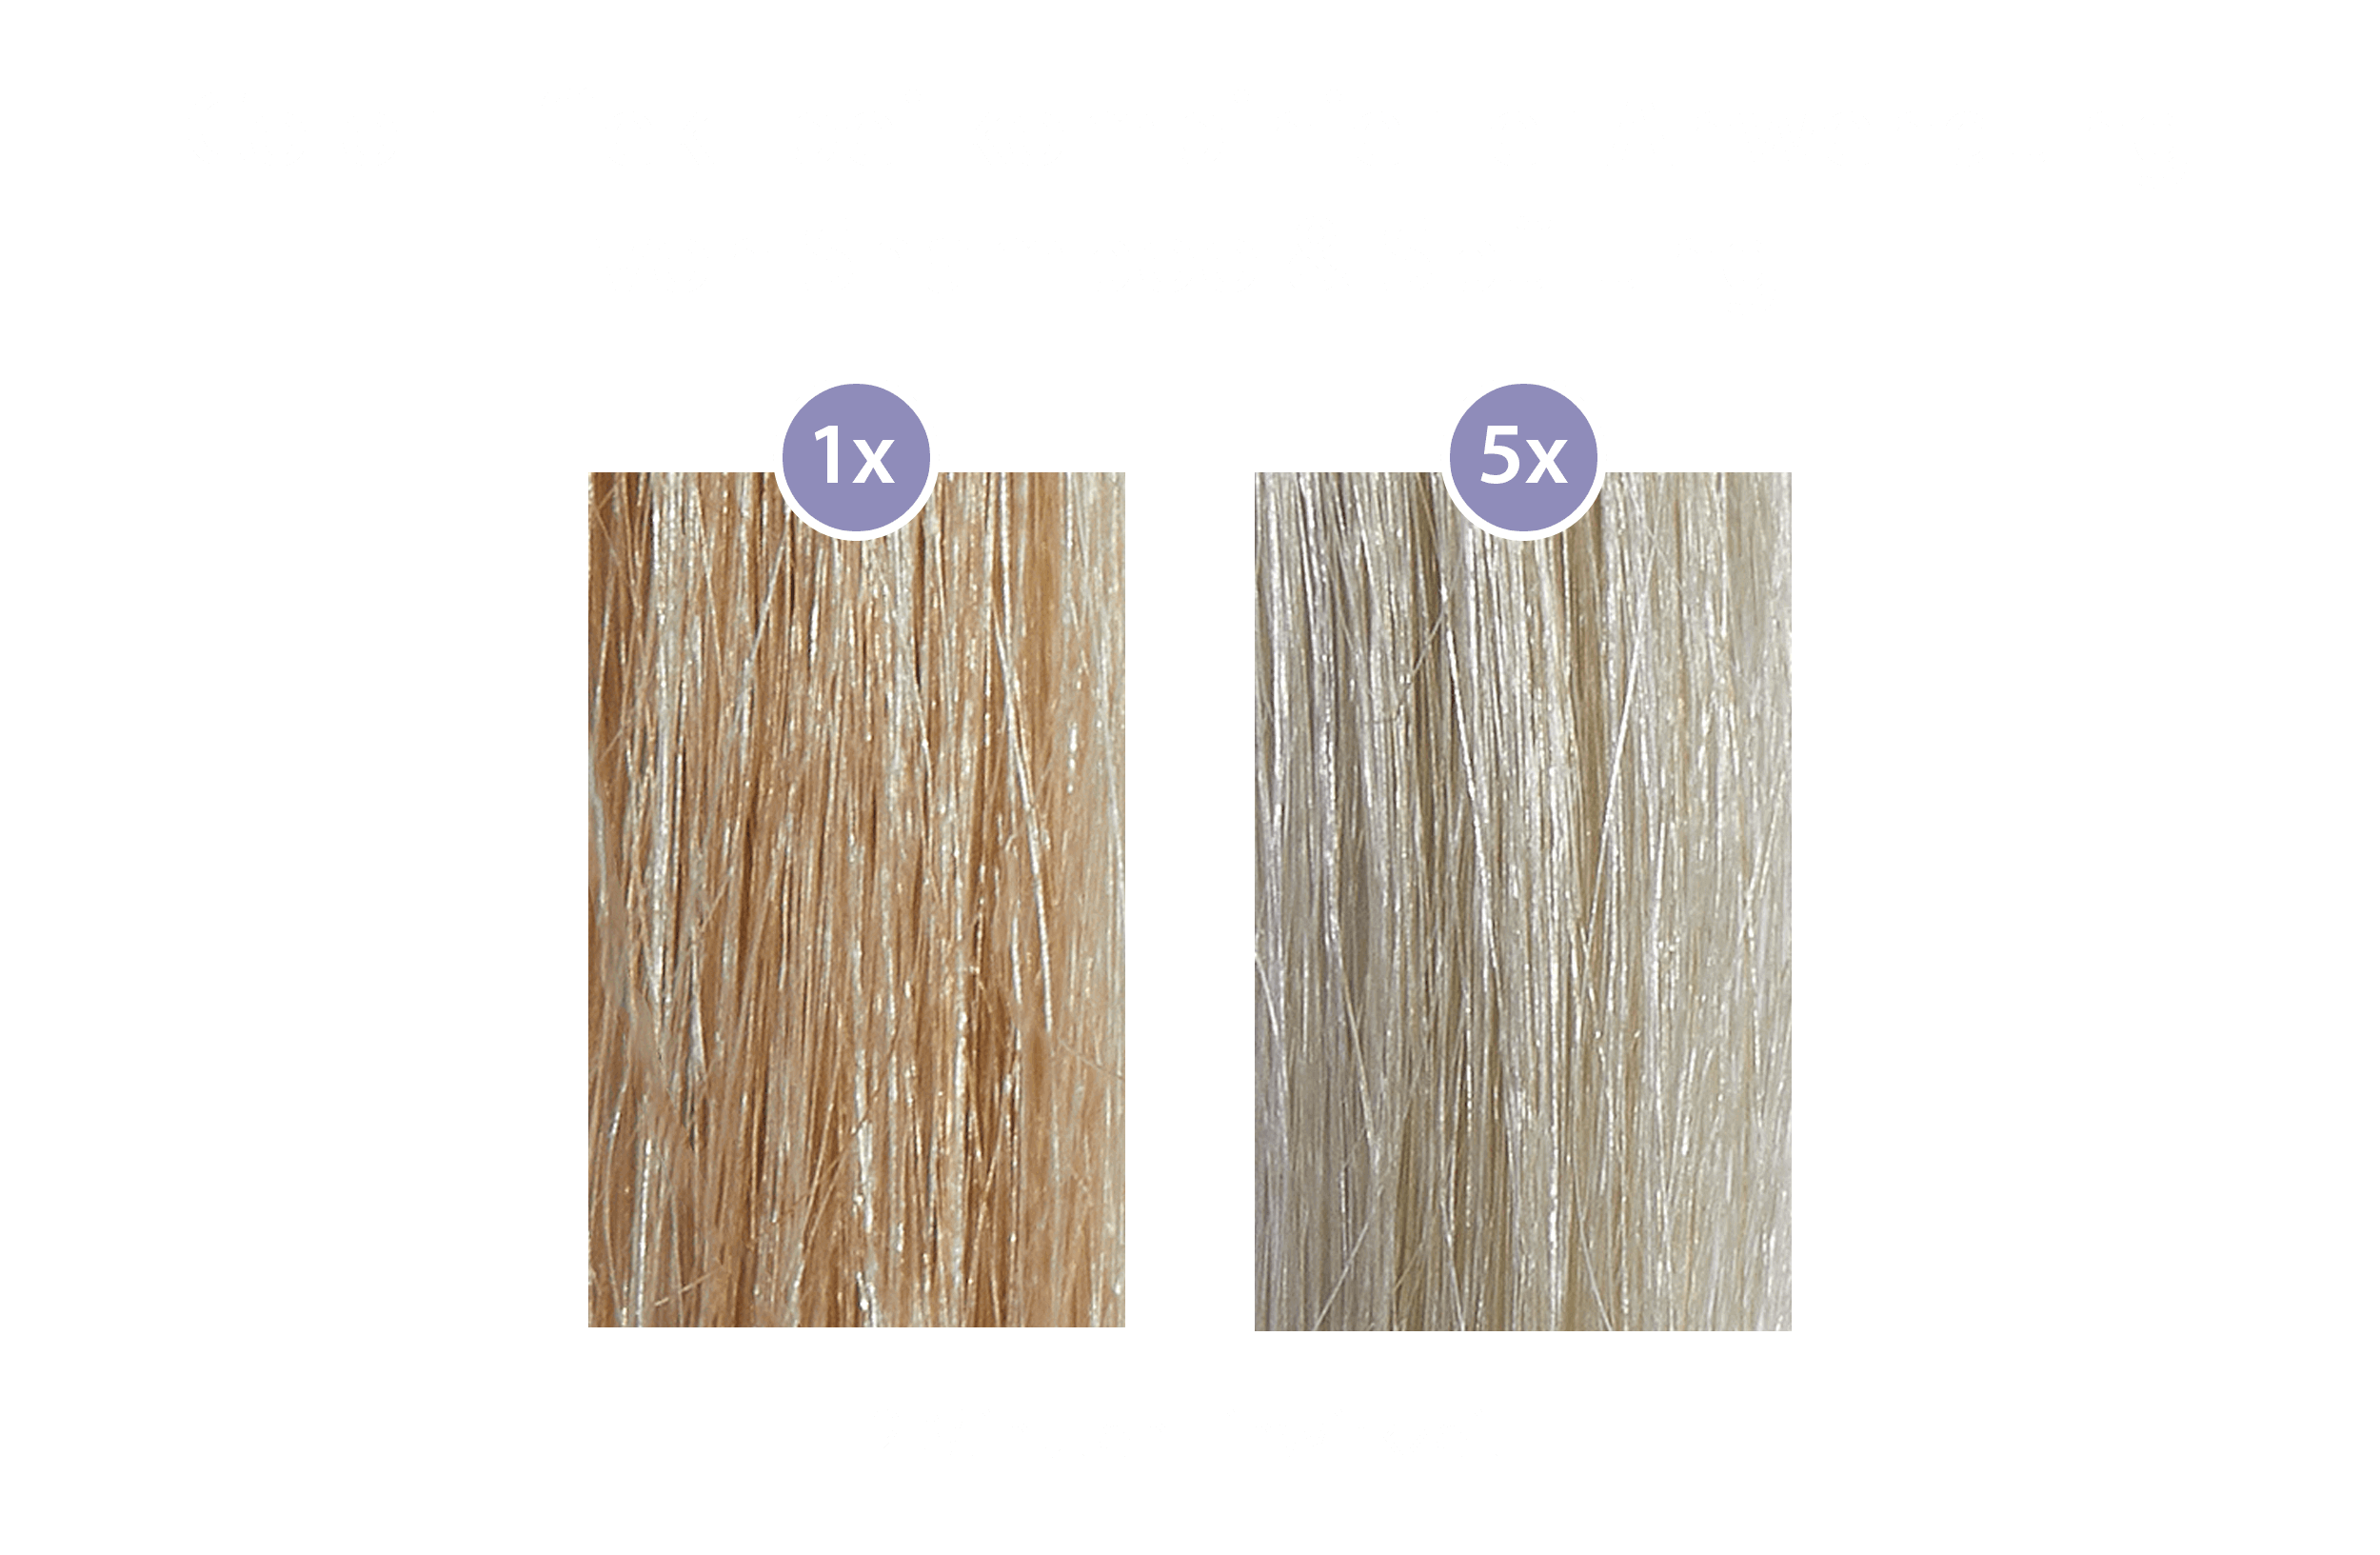 Color-Effekt bei kombinierter Anwendung von Shampoo & Spülung